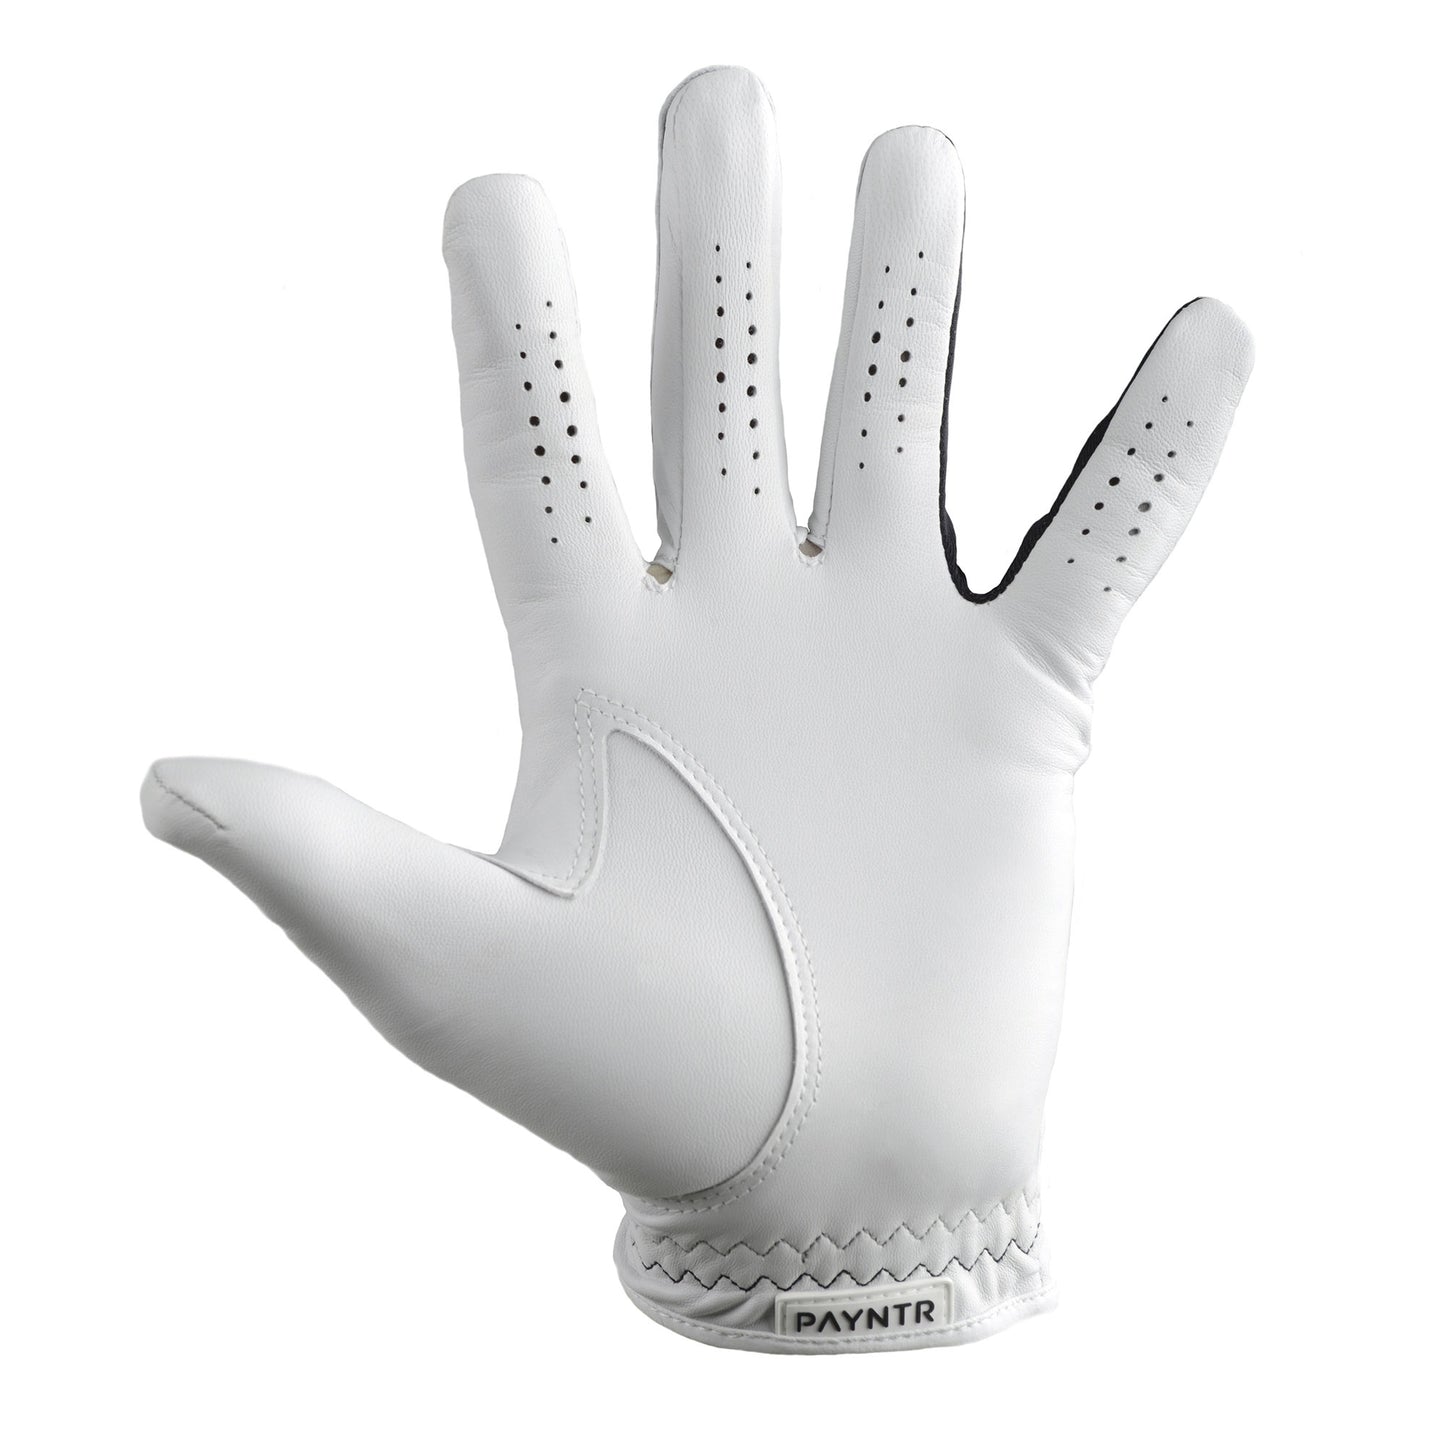 PAYNTR X-002 Golf Glove (LH) - Back